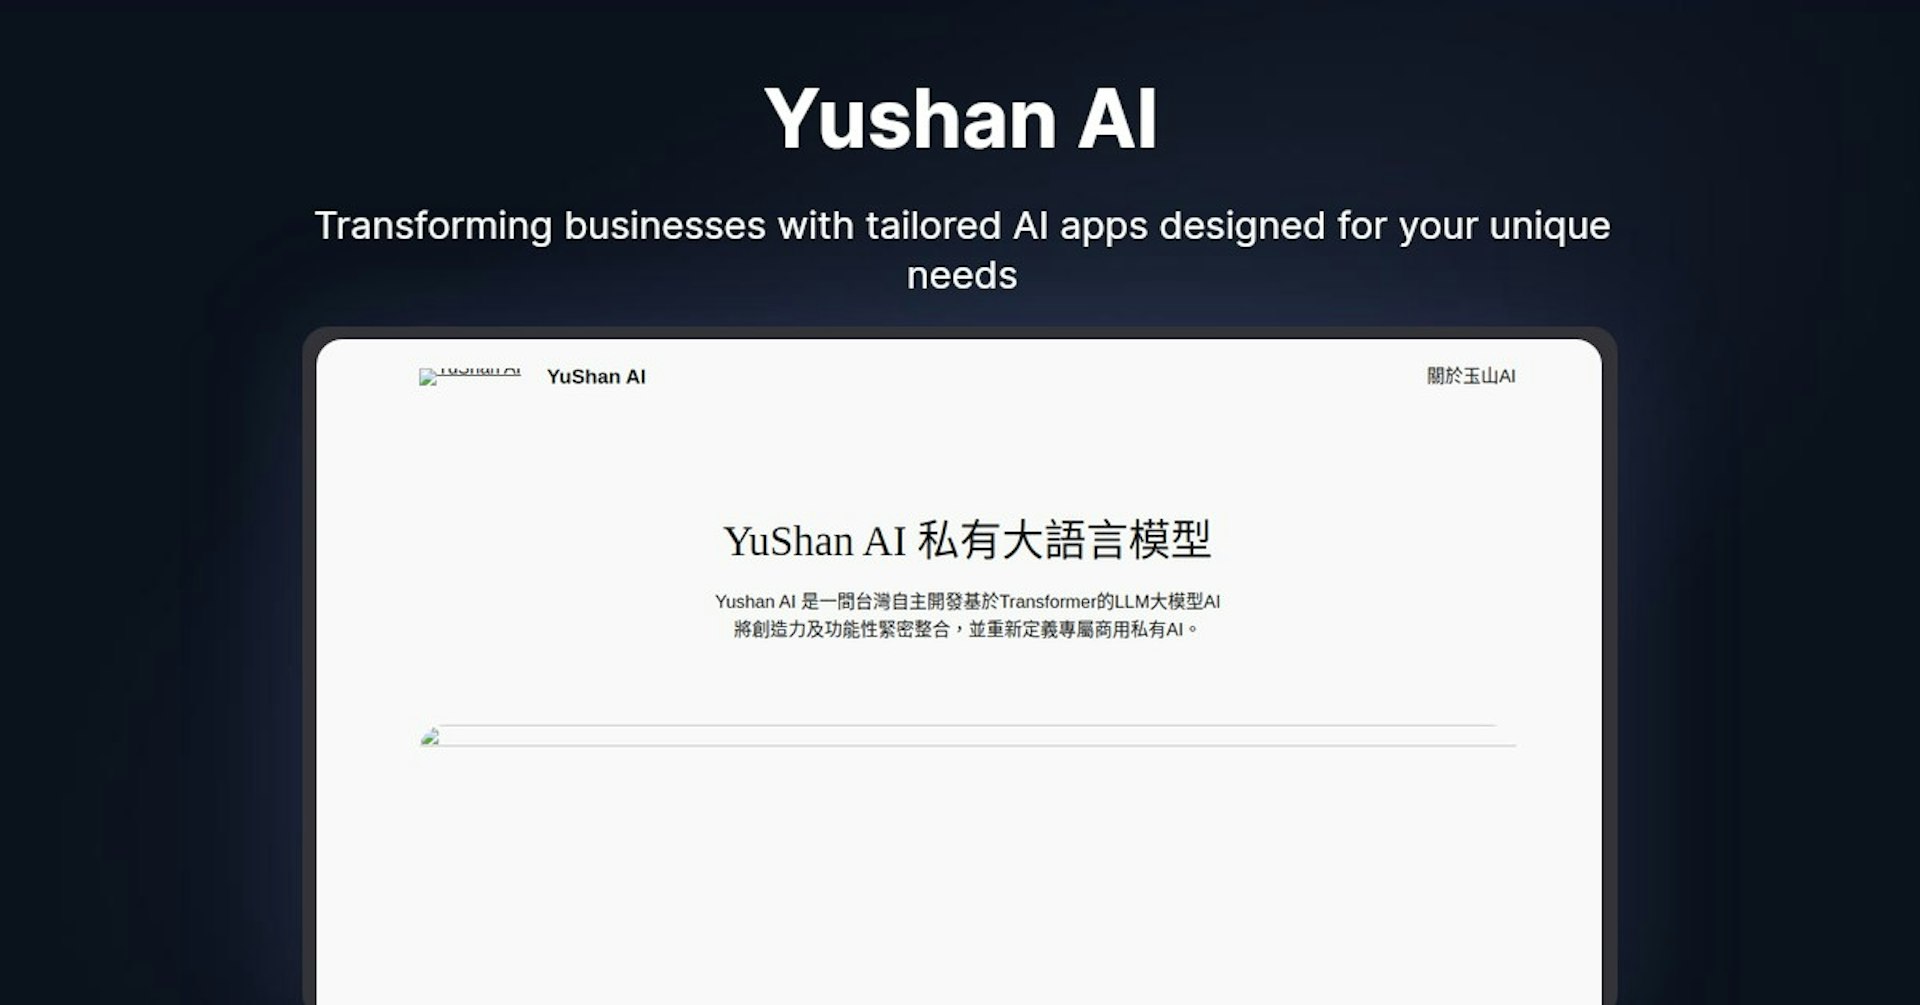 Yushan AI